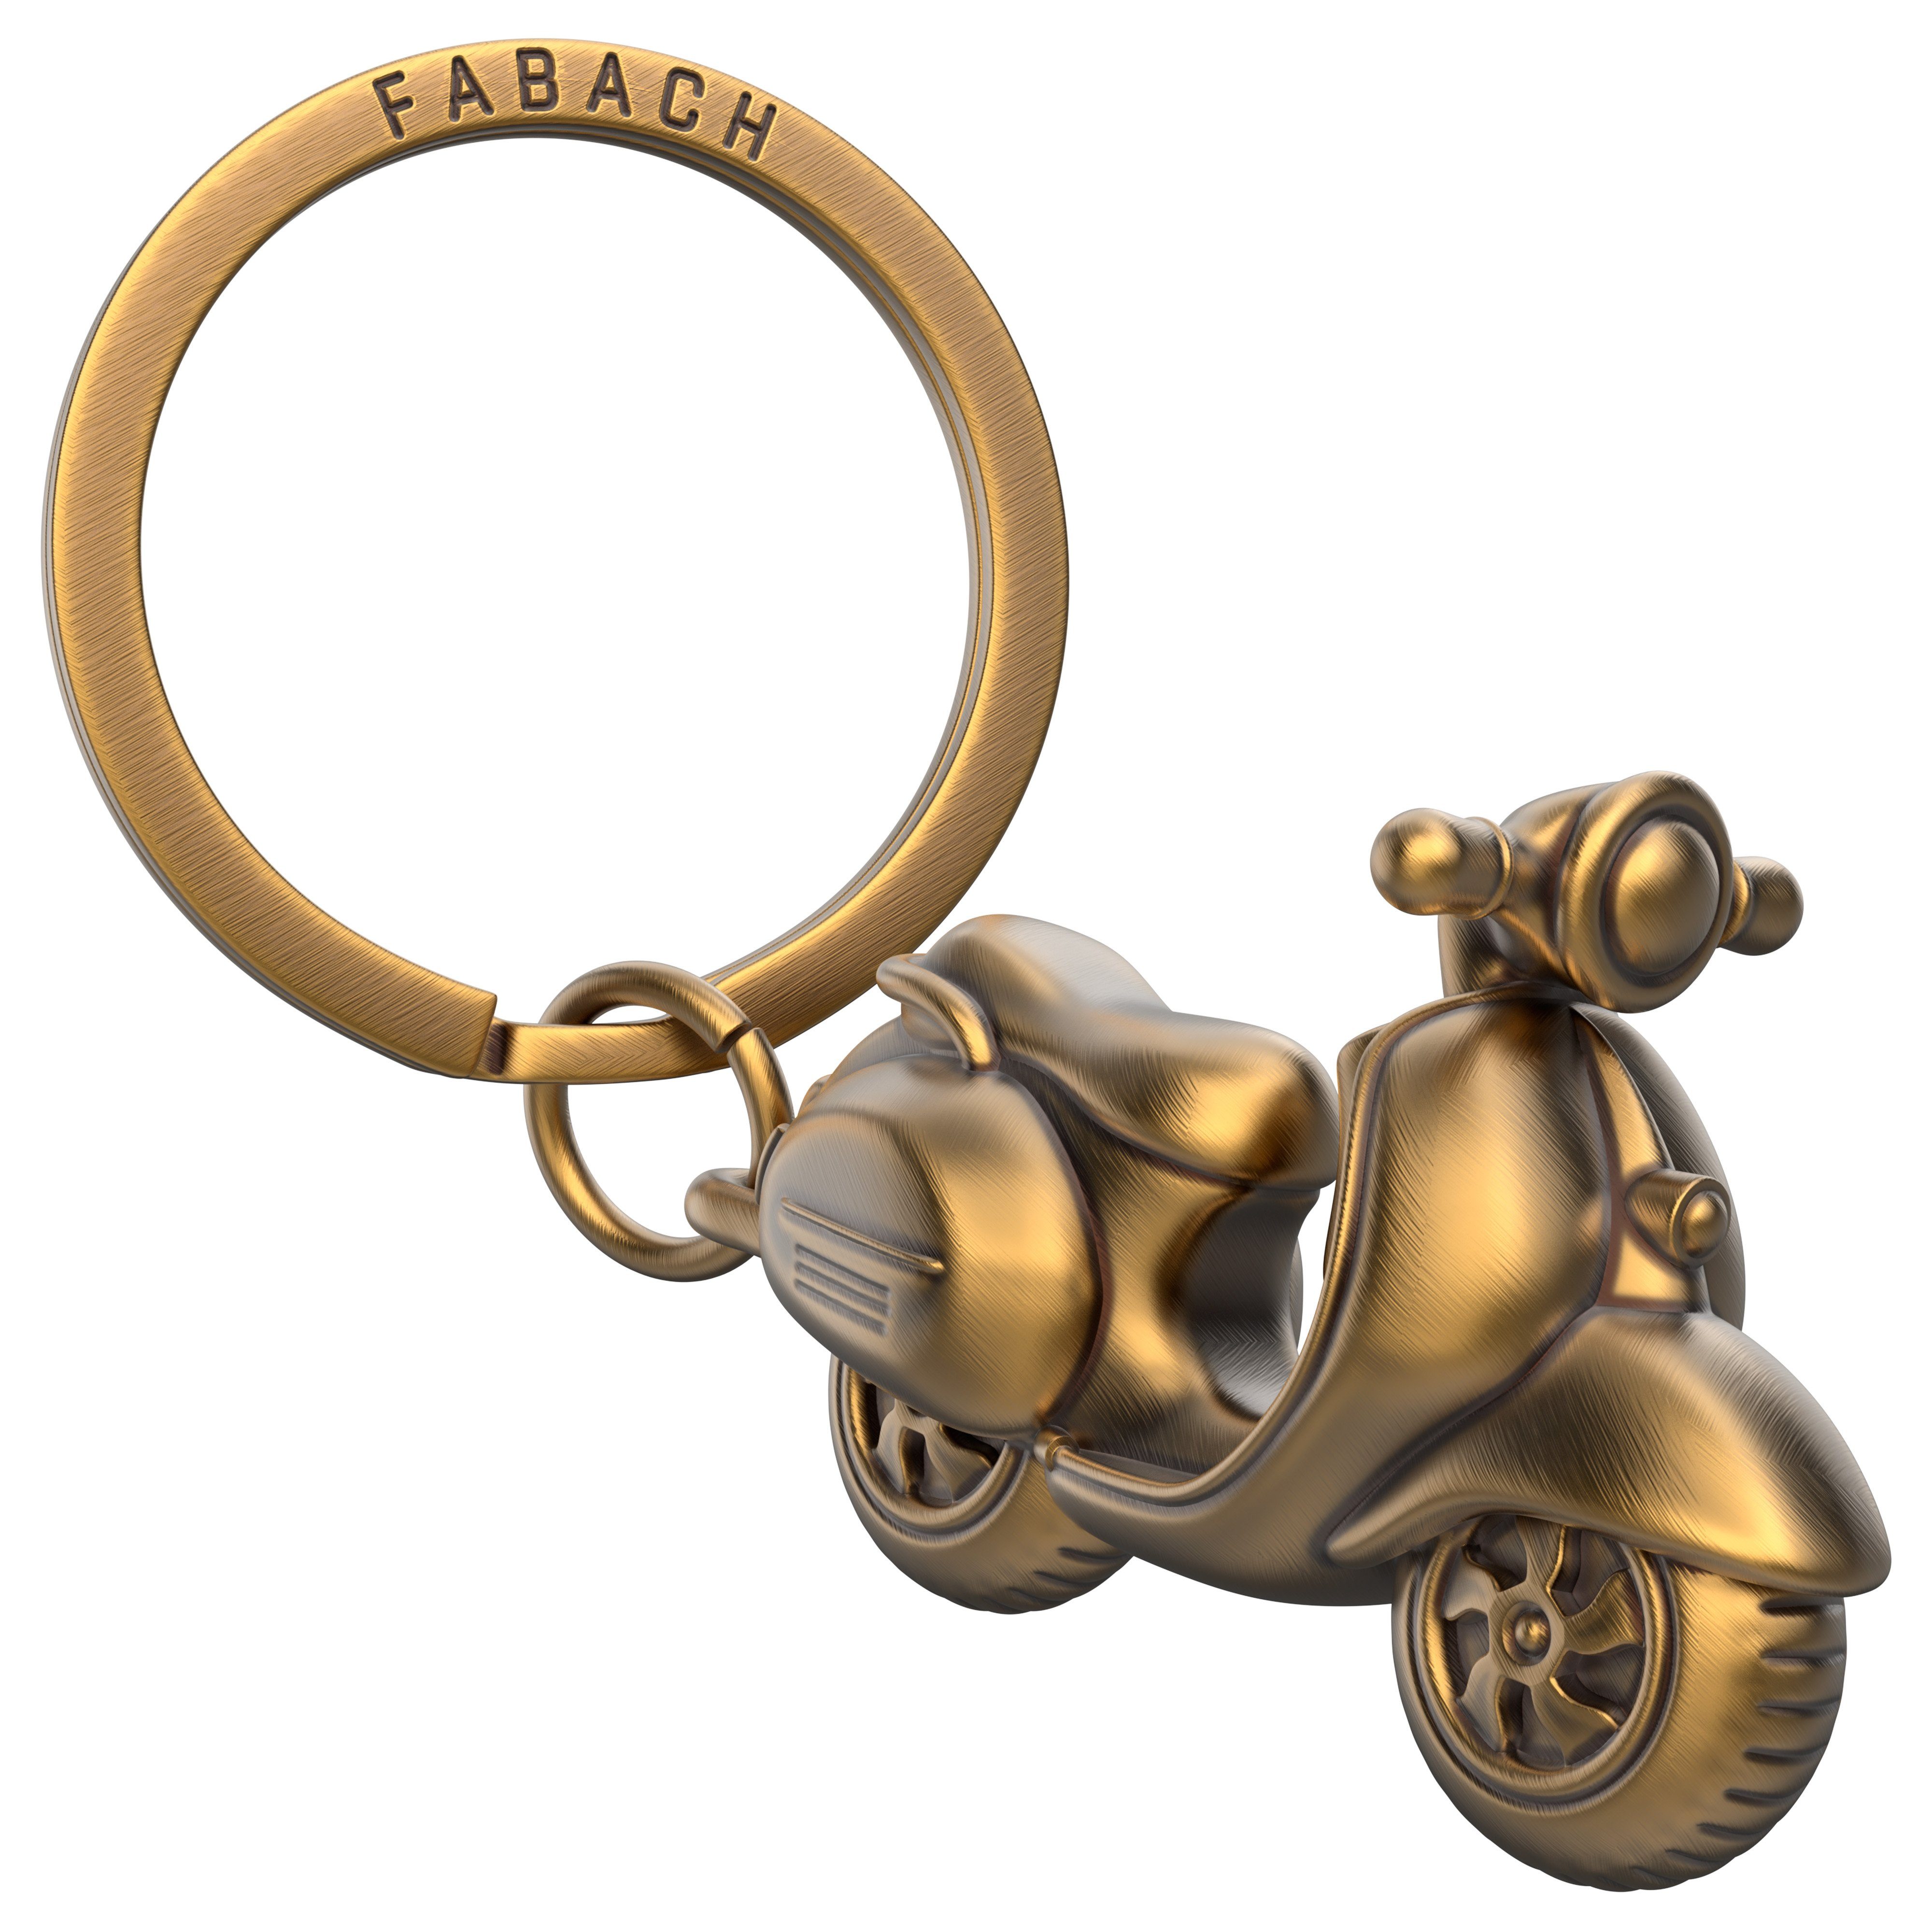 FABACH Schlüsselanhänger "Vespa" - Geschenk für Rollerfahrer und Vespa Fans Antique Bronze